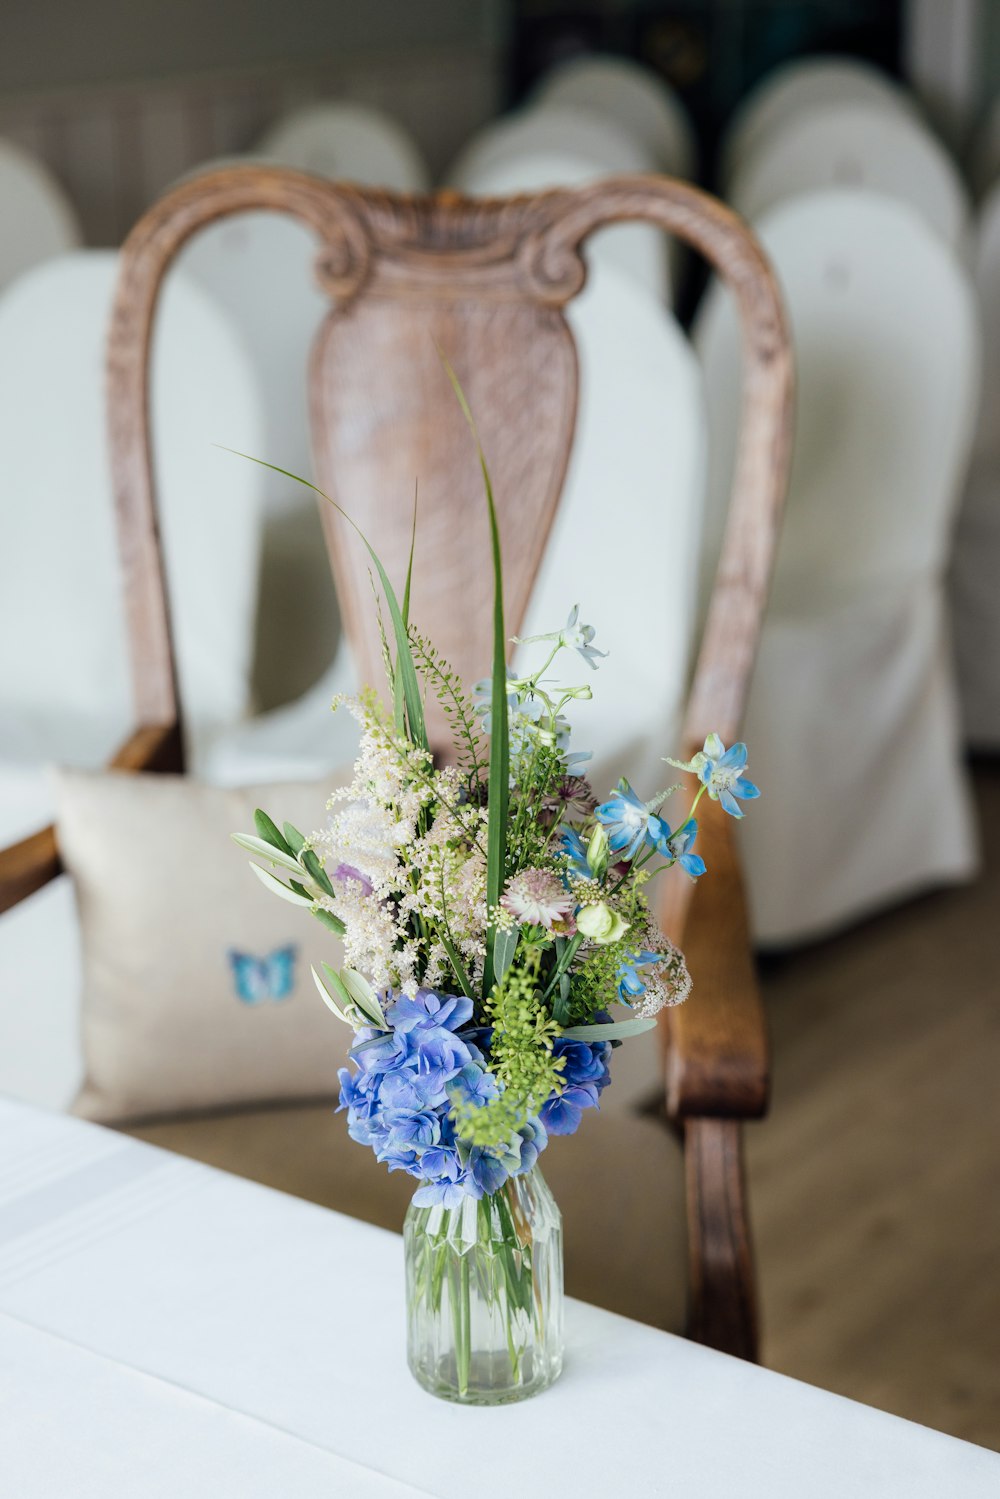 eine Vase gefüllt mit blauen und weißen Blumen auf einem Tisch